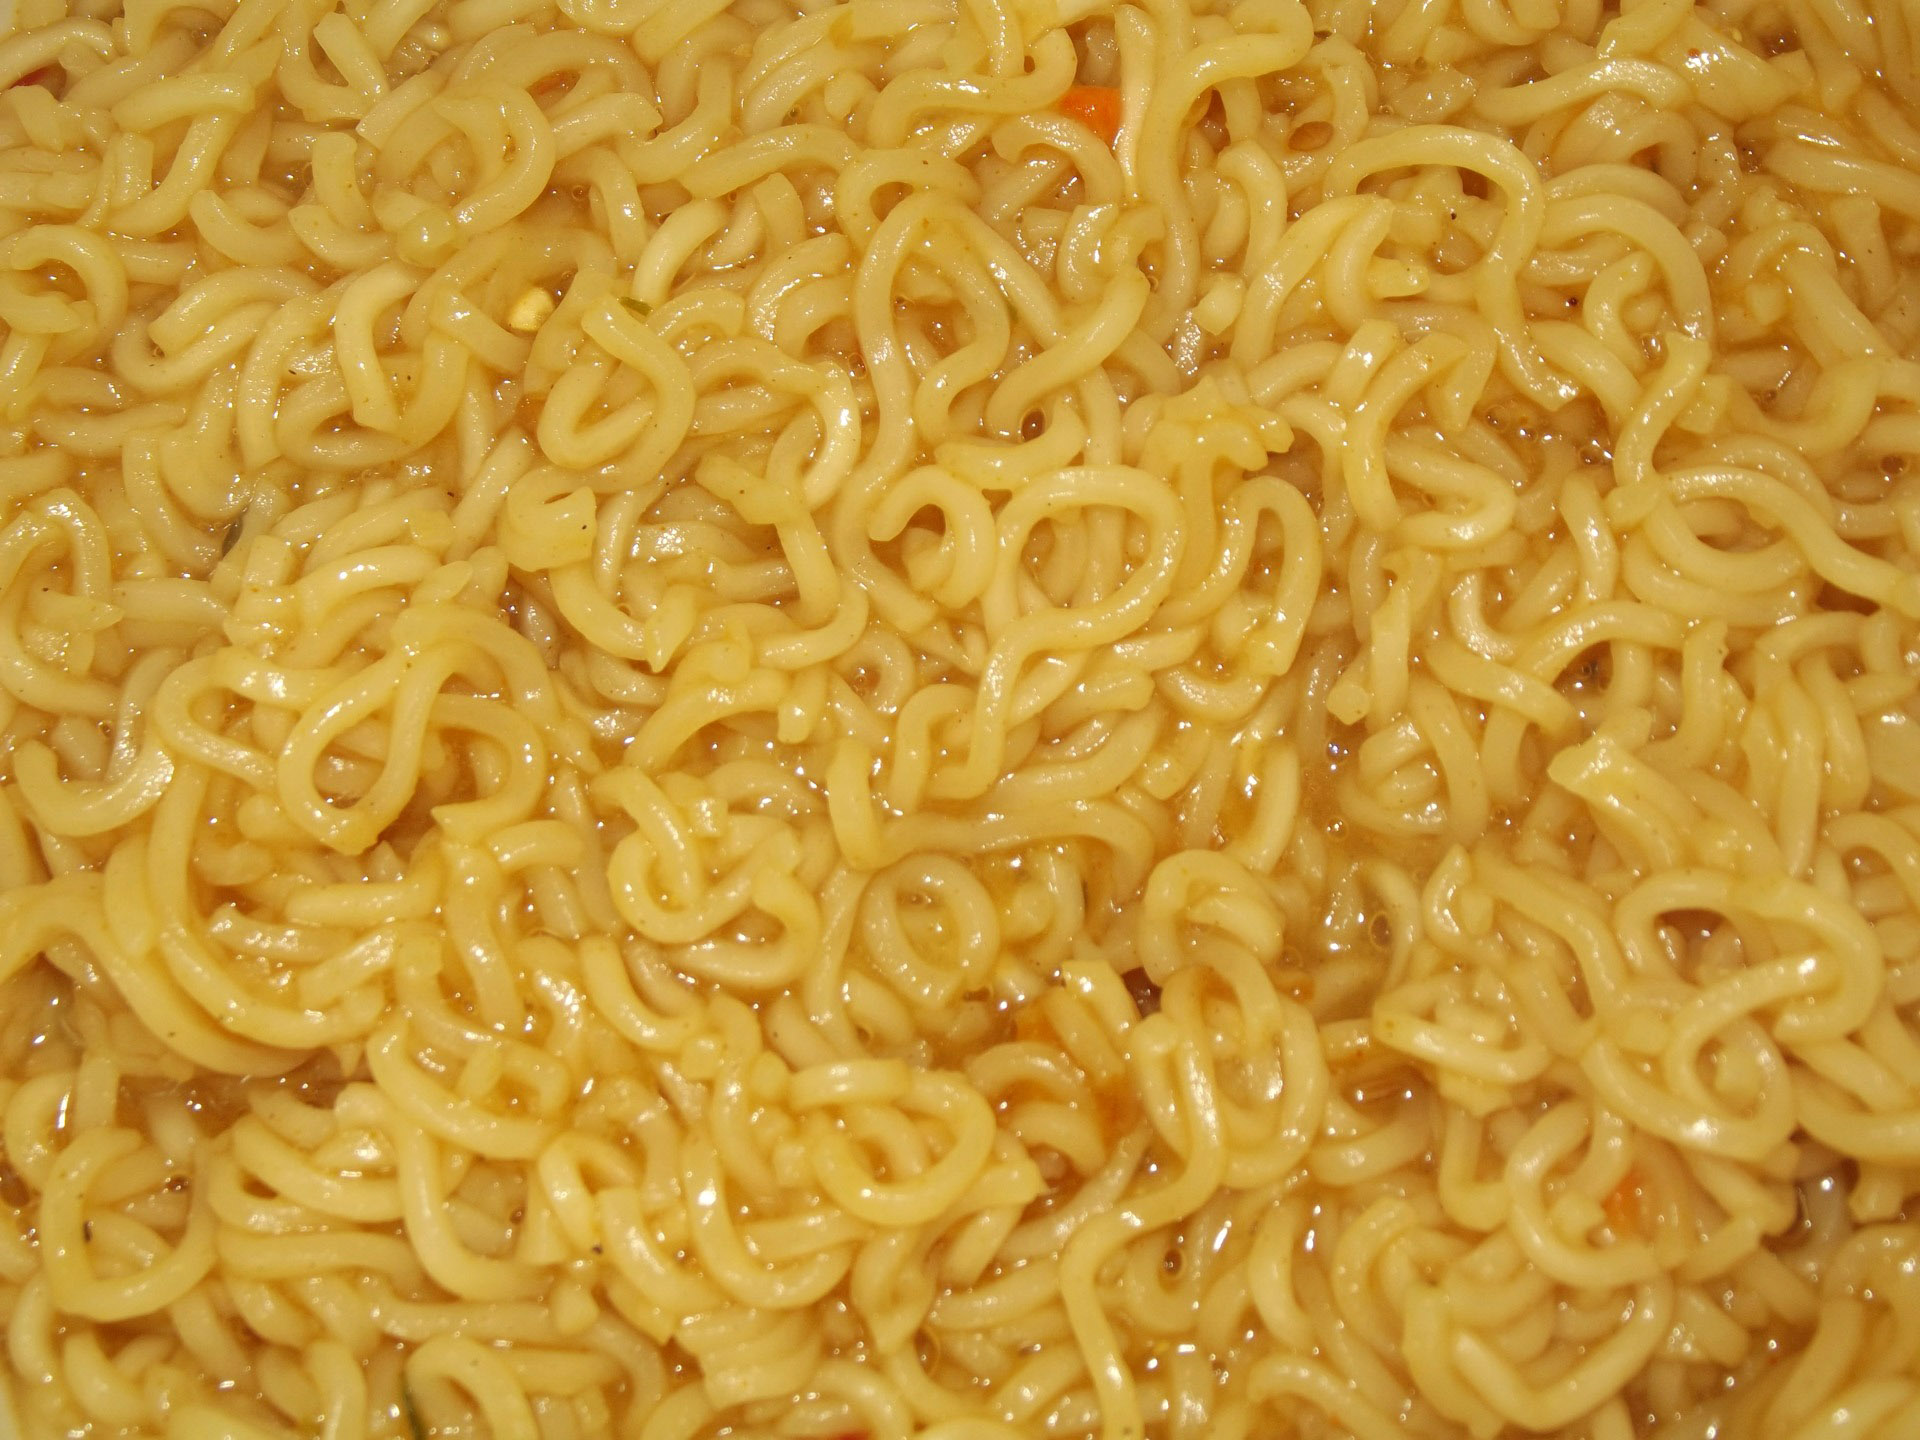 Ramen Noodles Food image Free stock photo Public Domain photo CC0